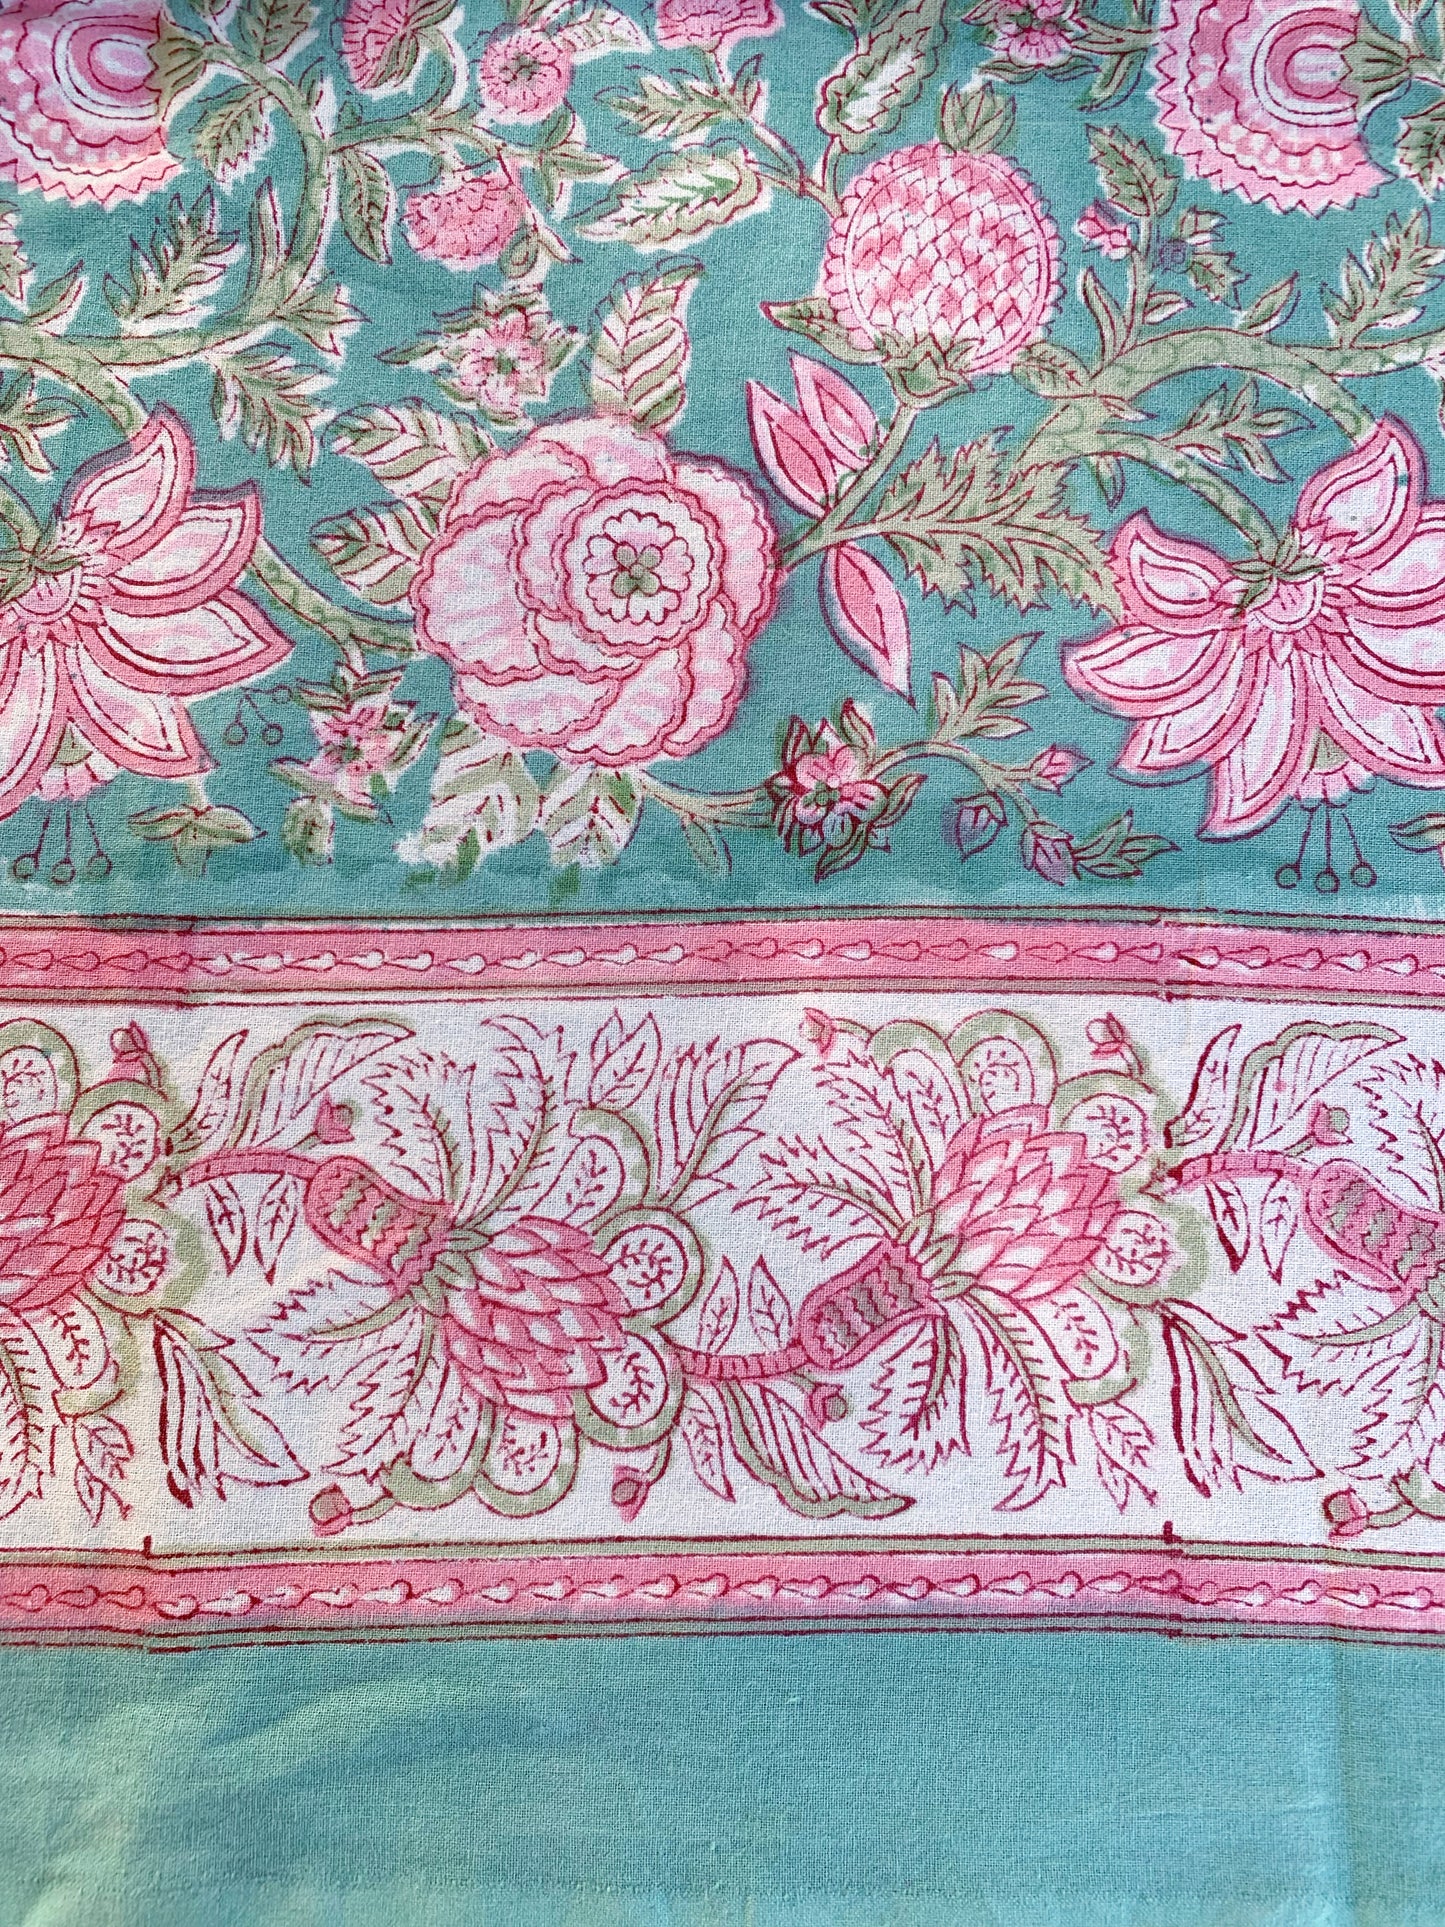 Mantel algodón puro estampado block print artesanal en India · Seis comensales · Mantel boho chic 100% algodón hindú · Flores turquesa rosa